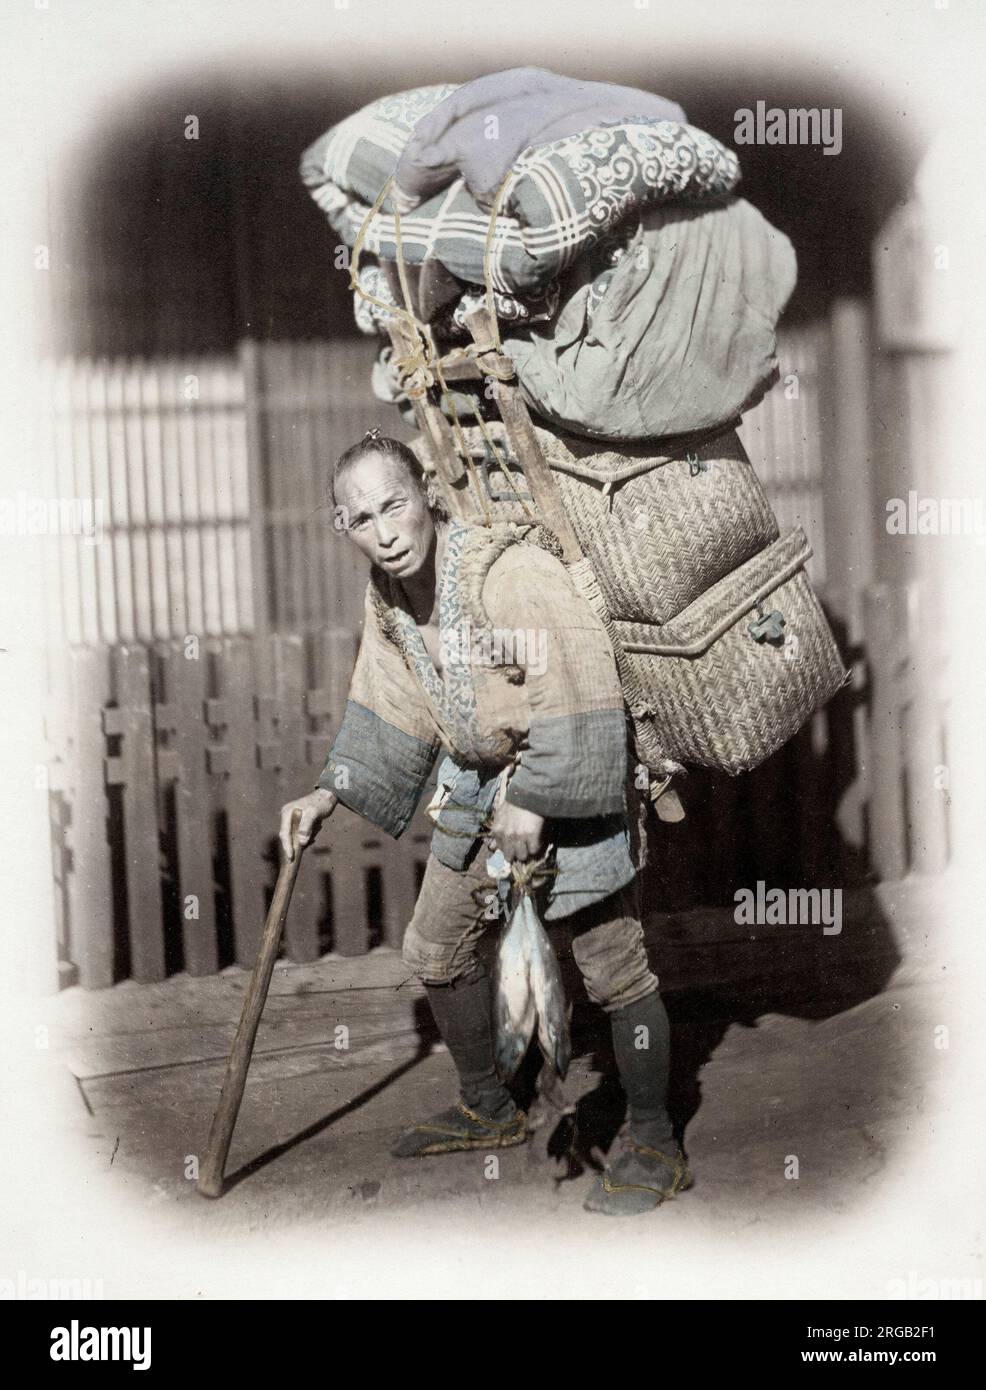 1860's Japon - portrait d'une coolie ou d'un porteur avec une lourde charge Felice ou Felix Beato (1832 - 29 janvier 1909), photographe italien-britannique travaillant principalement en Inde, Japon, Chine Banque D'Images